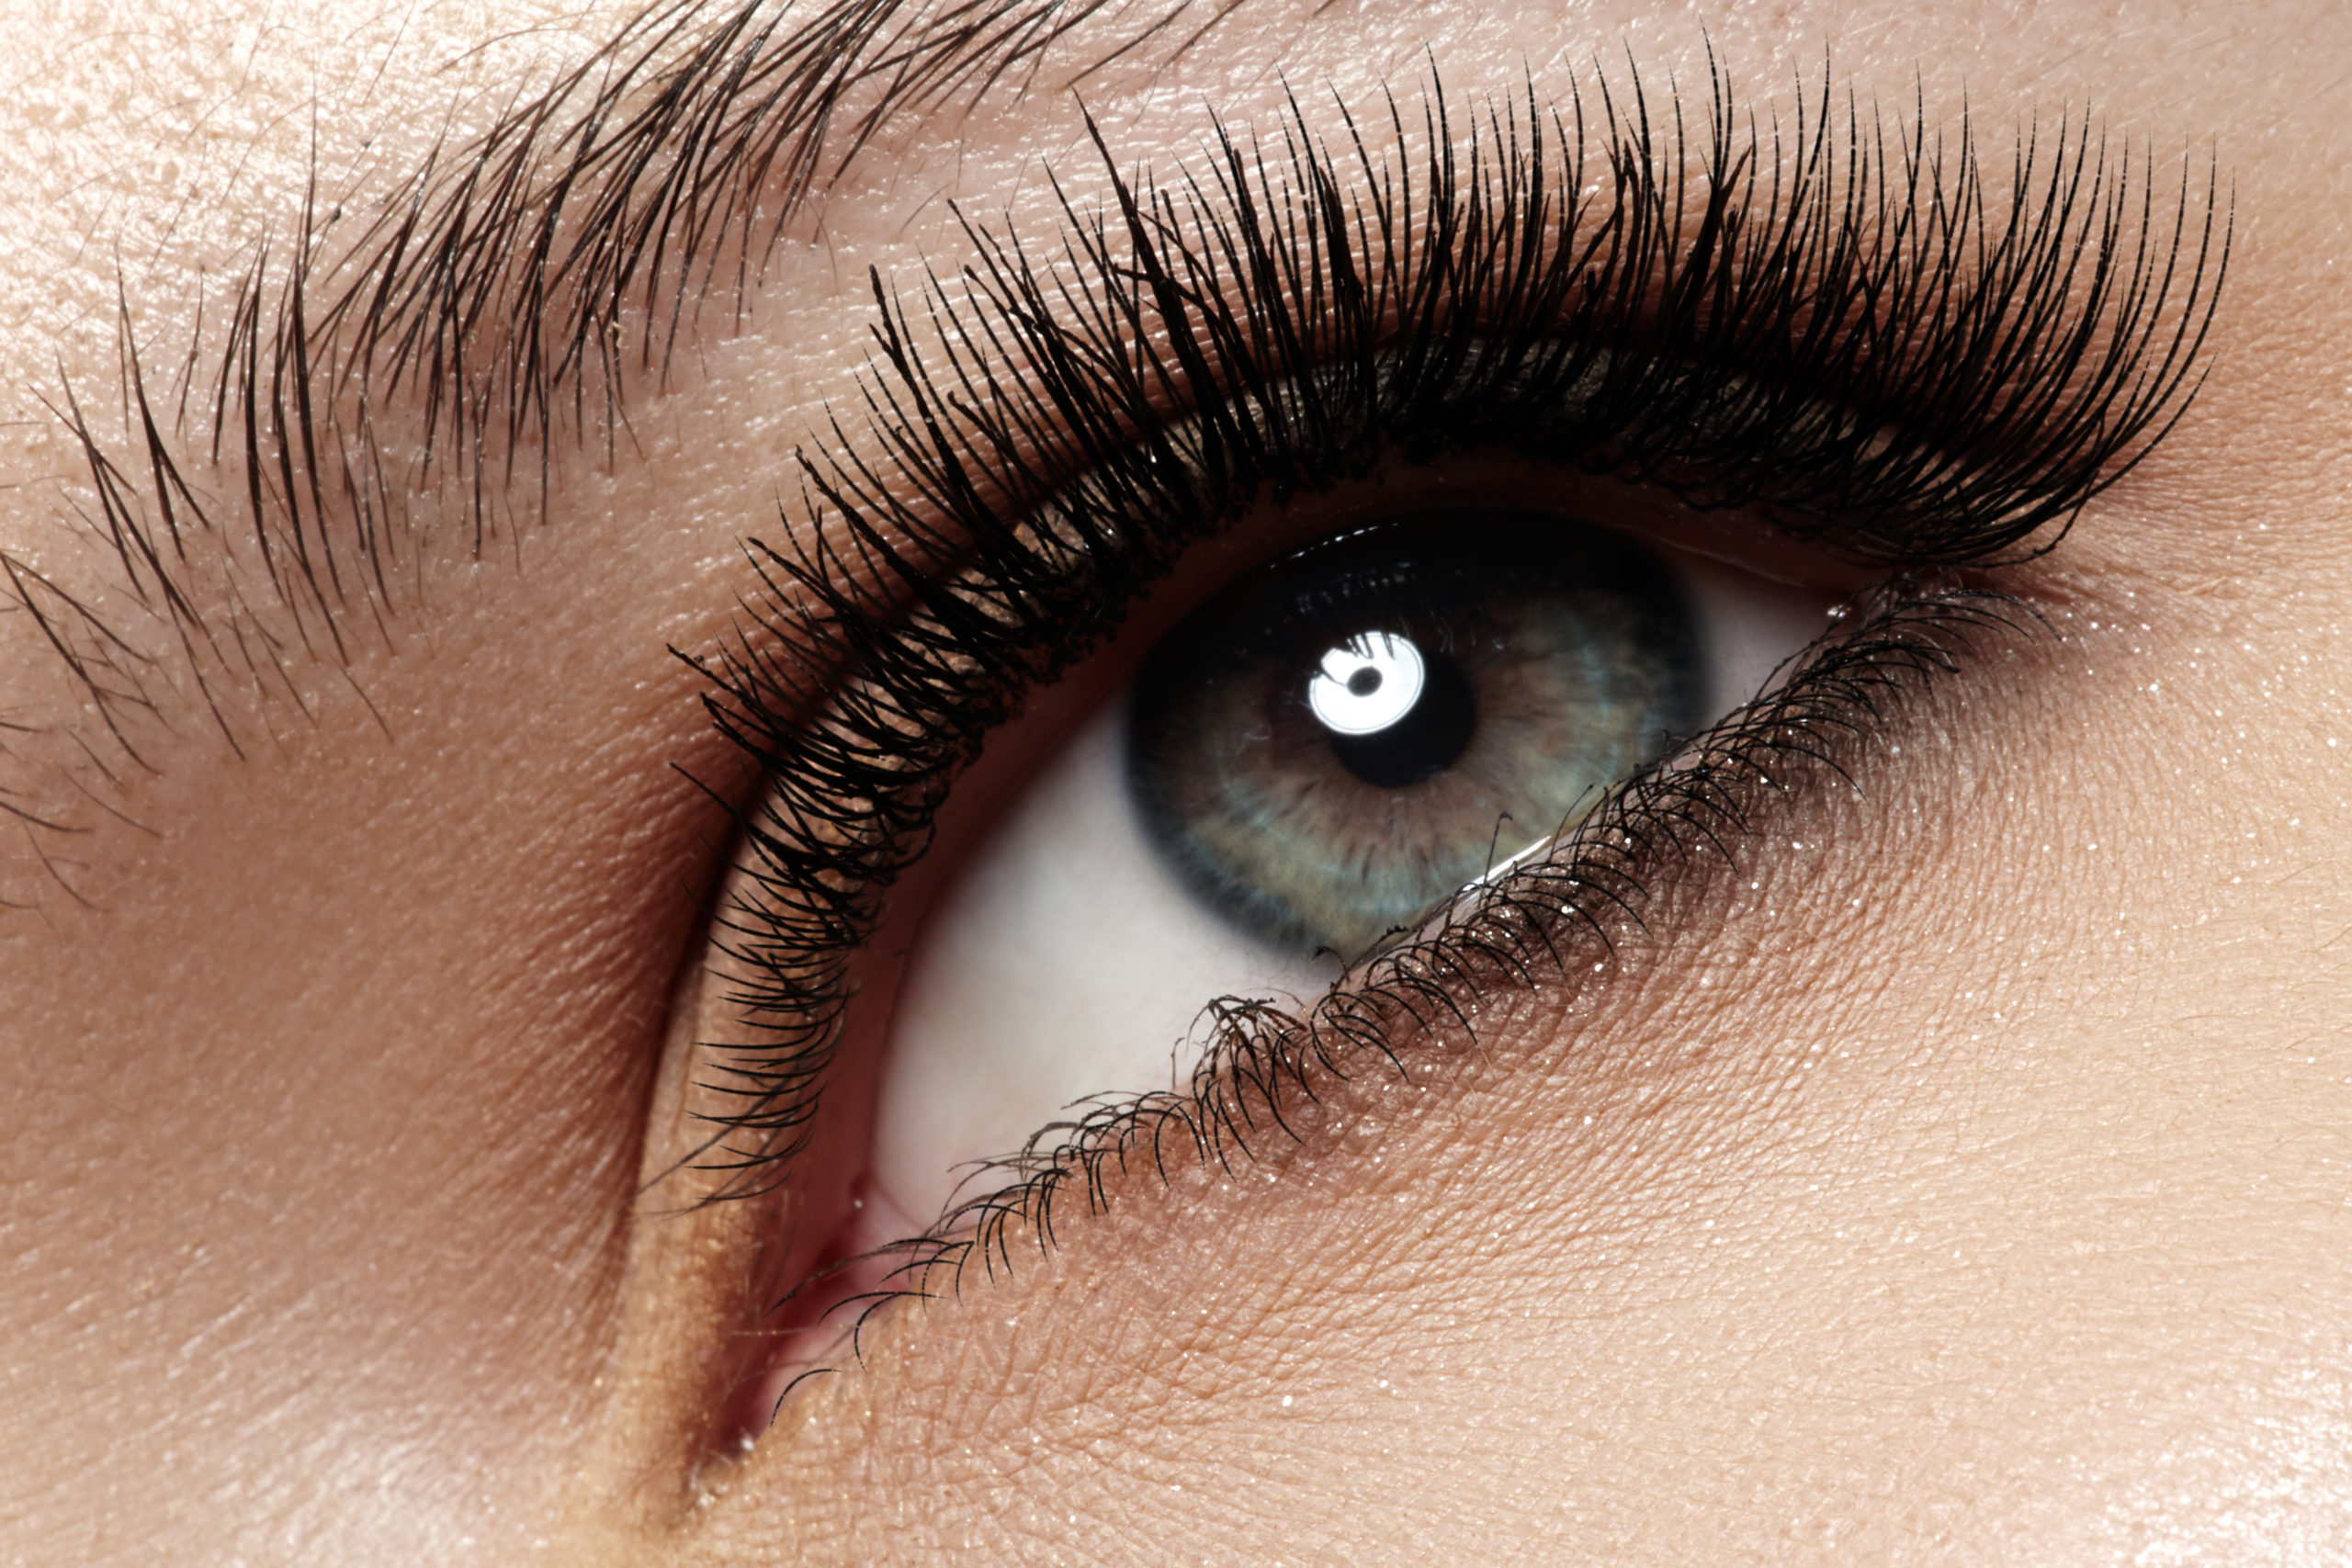 Macro of beautiful eye with extremely long eyelashes